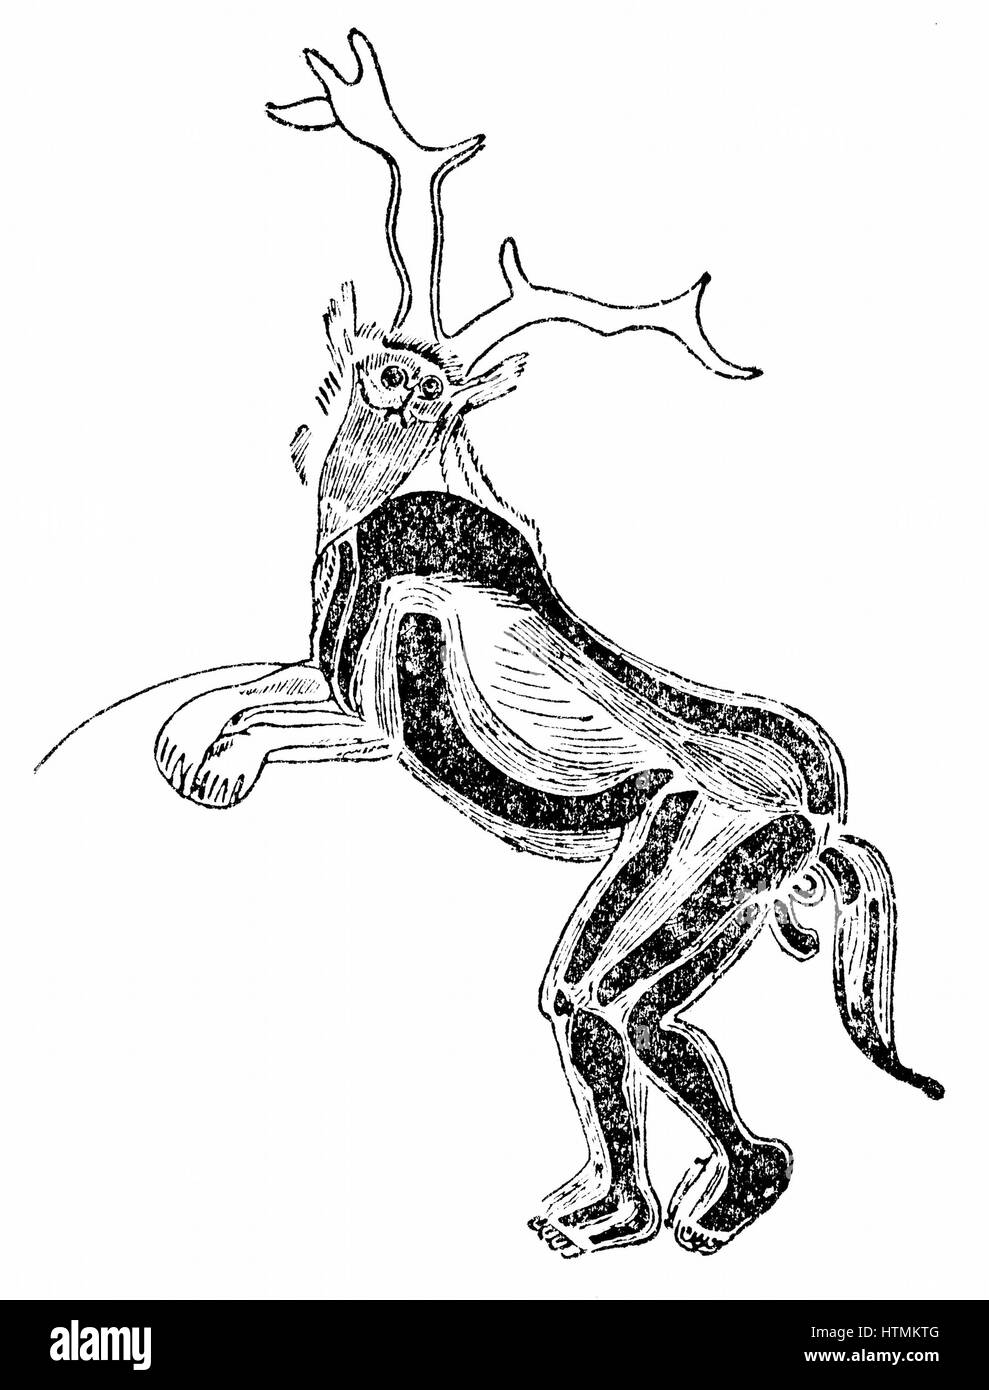 DER Zauberer (oder Medizinmann): Wand-Gravur in der Höhle von Trois Freres in der Nähe von St Girons, Ariege, Frankreich. Er hat gezeigt, Stag es Hörner, Wolfs Ohren und Eule Maske, ein Bär Vorderbeine und einen Pferdeschwanz tragen. Gravur. Stockfoto